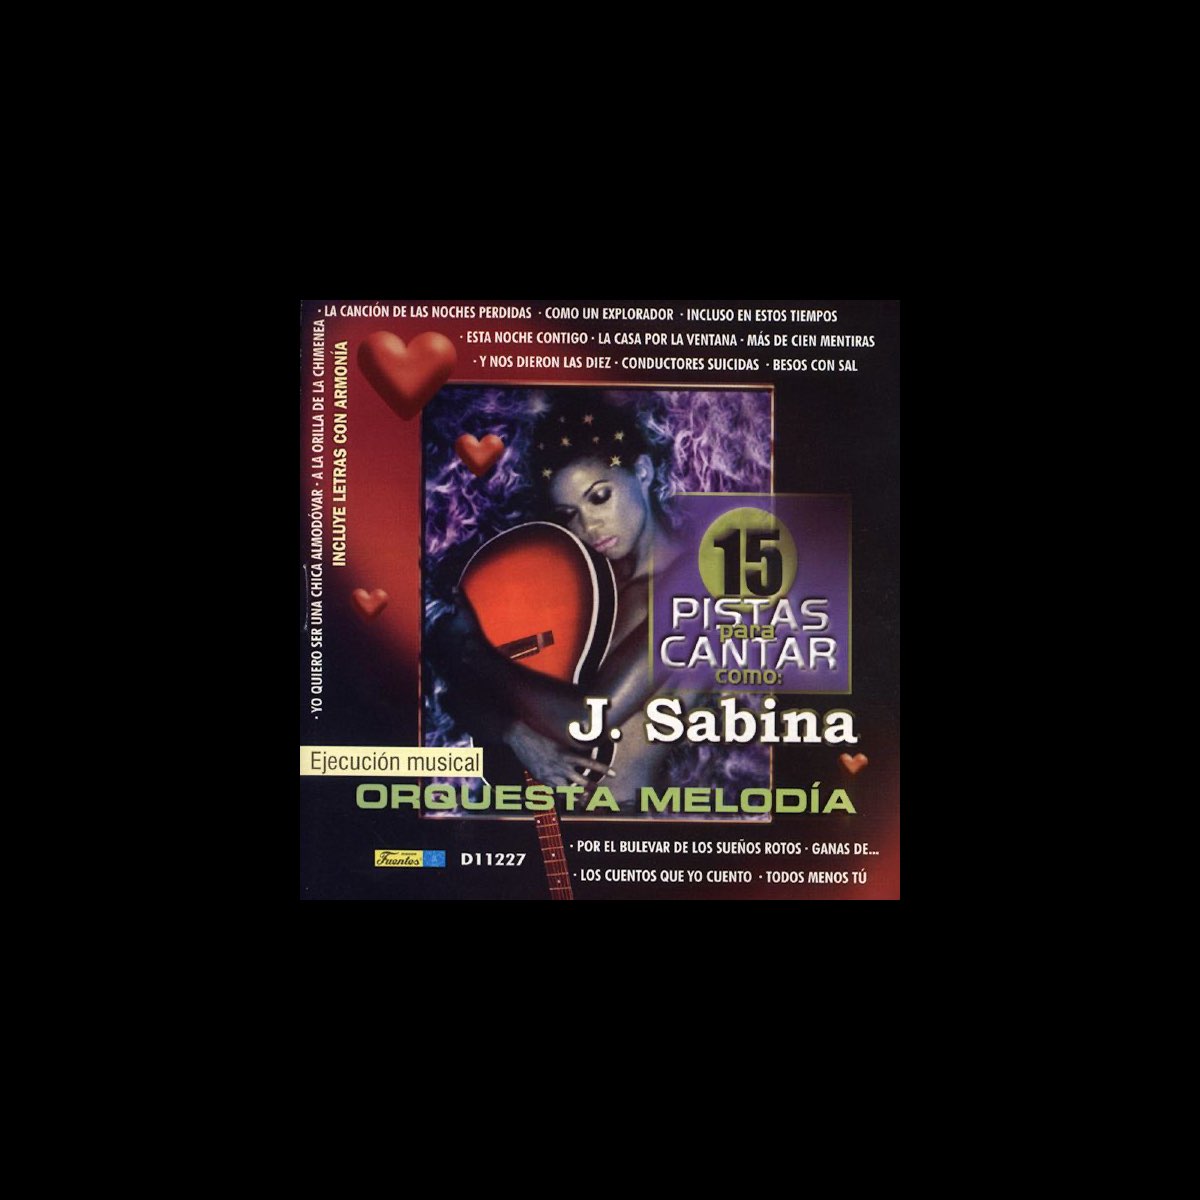 Cantar Como - Sing Along: Joaquin Sabina by Orquesta Melodia on Apple Music